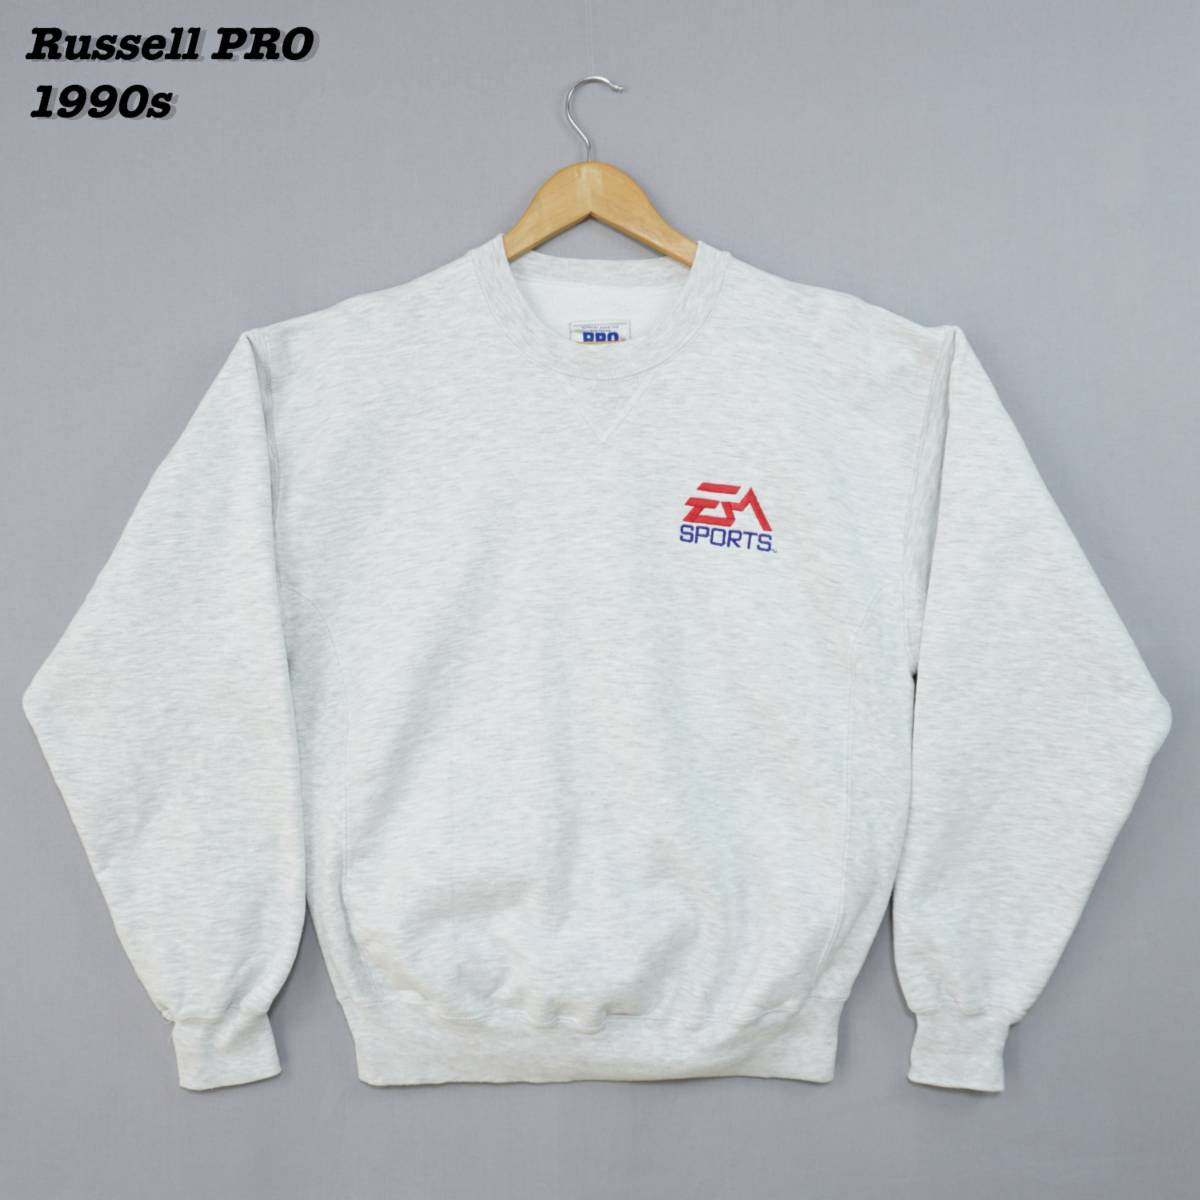 優先配送 ラッセル SWT2332 M USA 1990s Sweatshirts PRO Russell ラッセルプロ アメリカ製 1990年代 スウェット リバースウィーブ Mサイズ